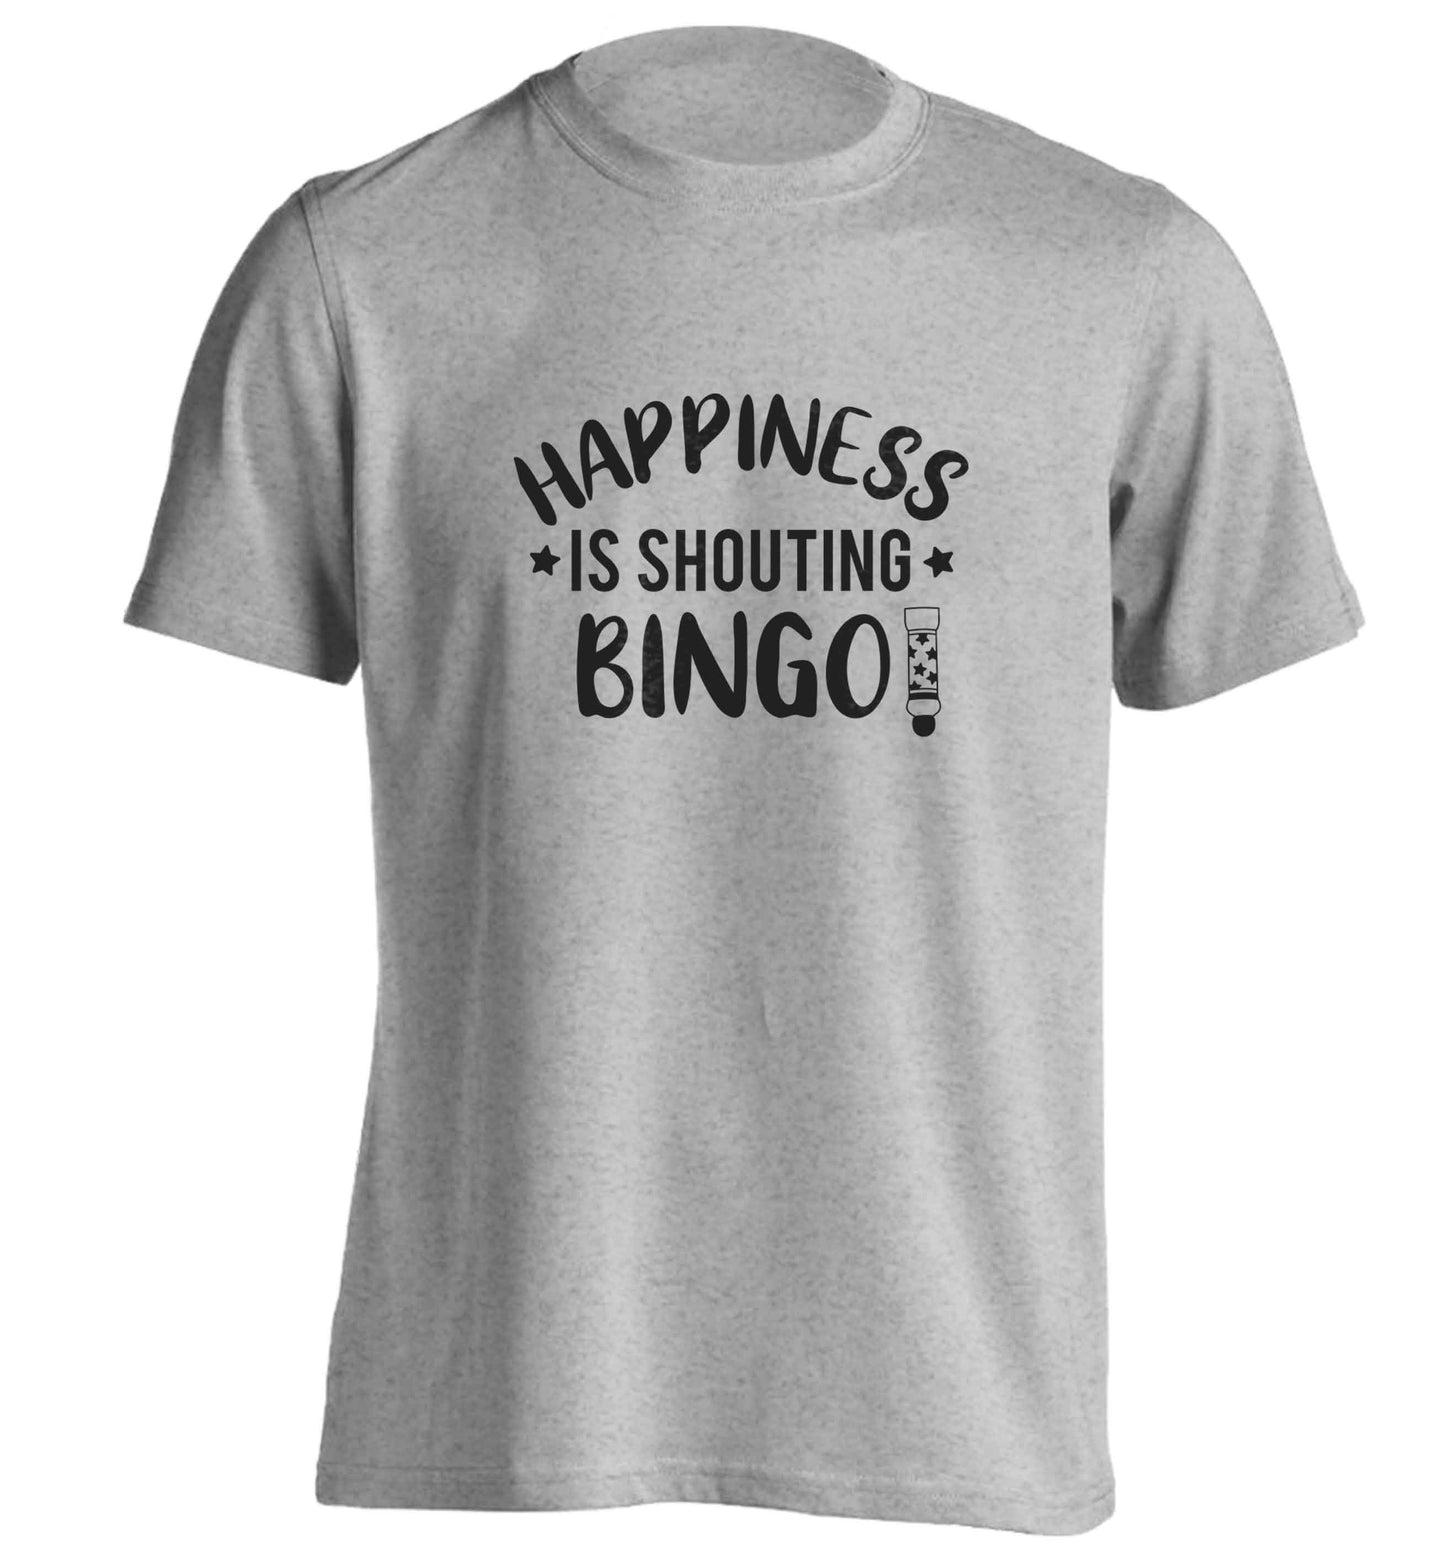 Happiness is shouting bingo! adults unisex grey Tshirt 2XL